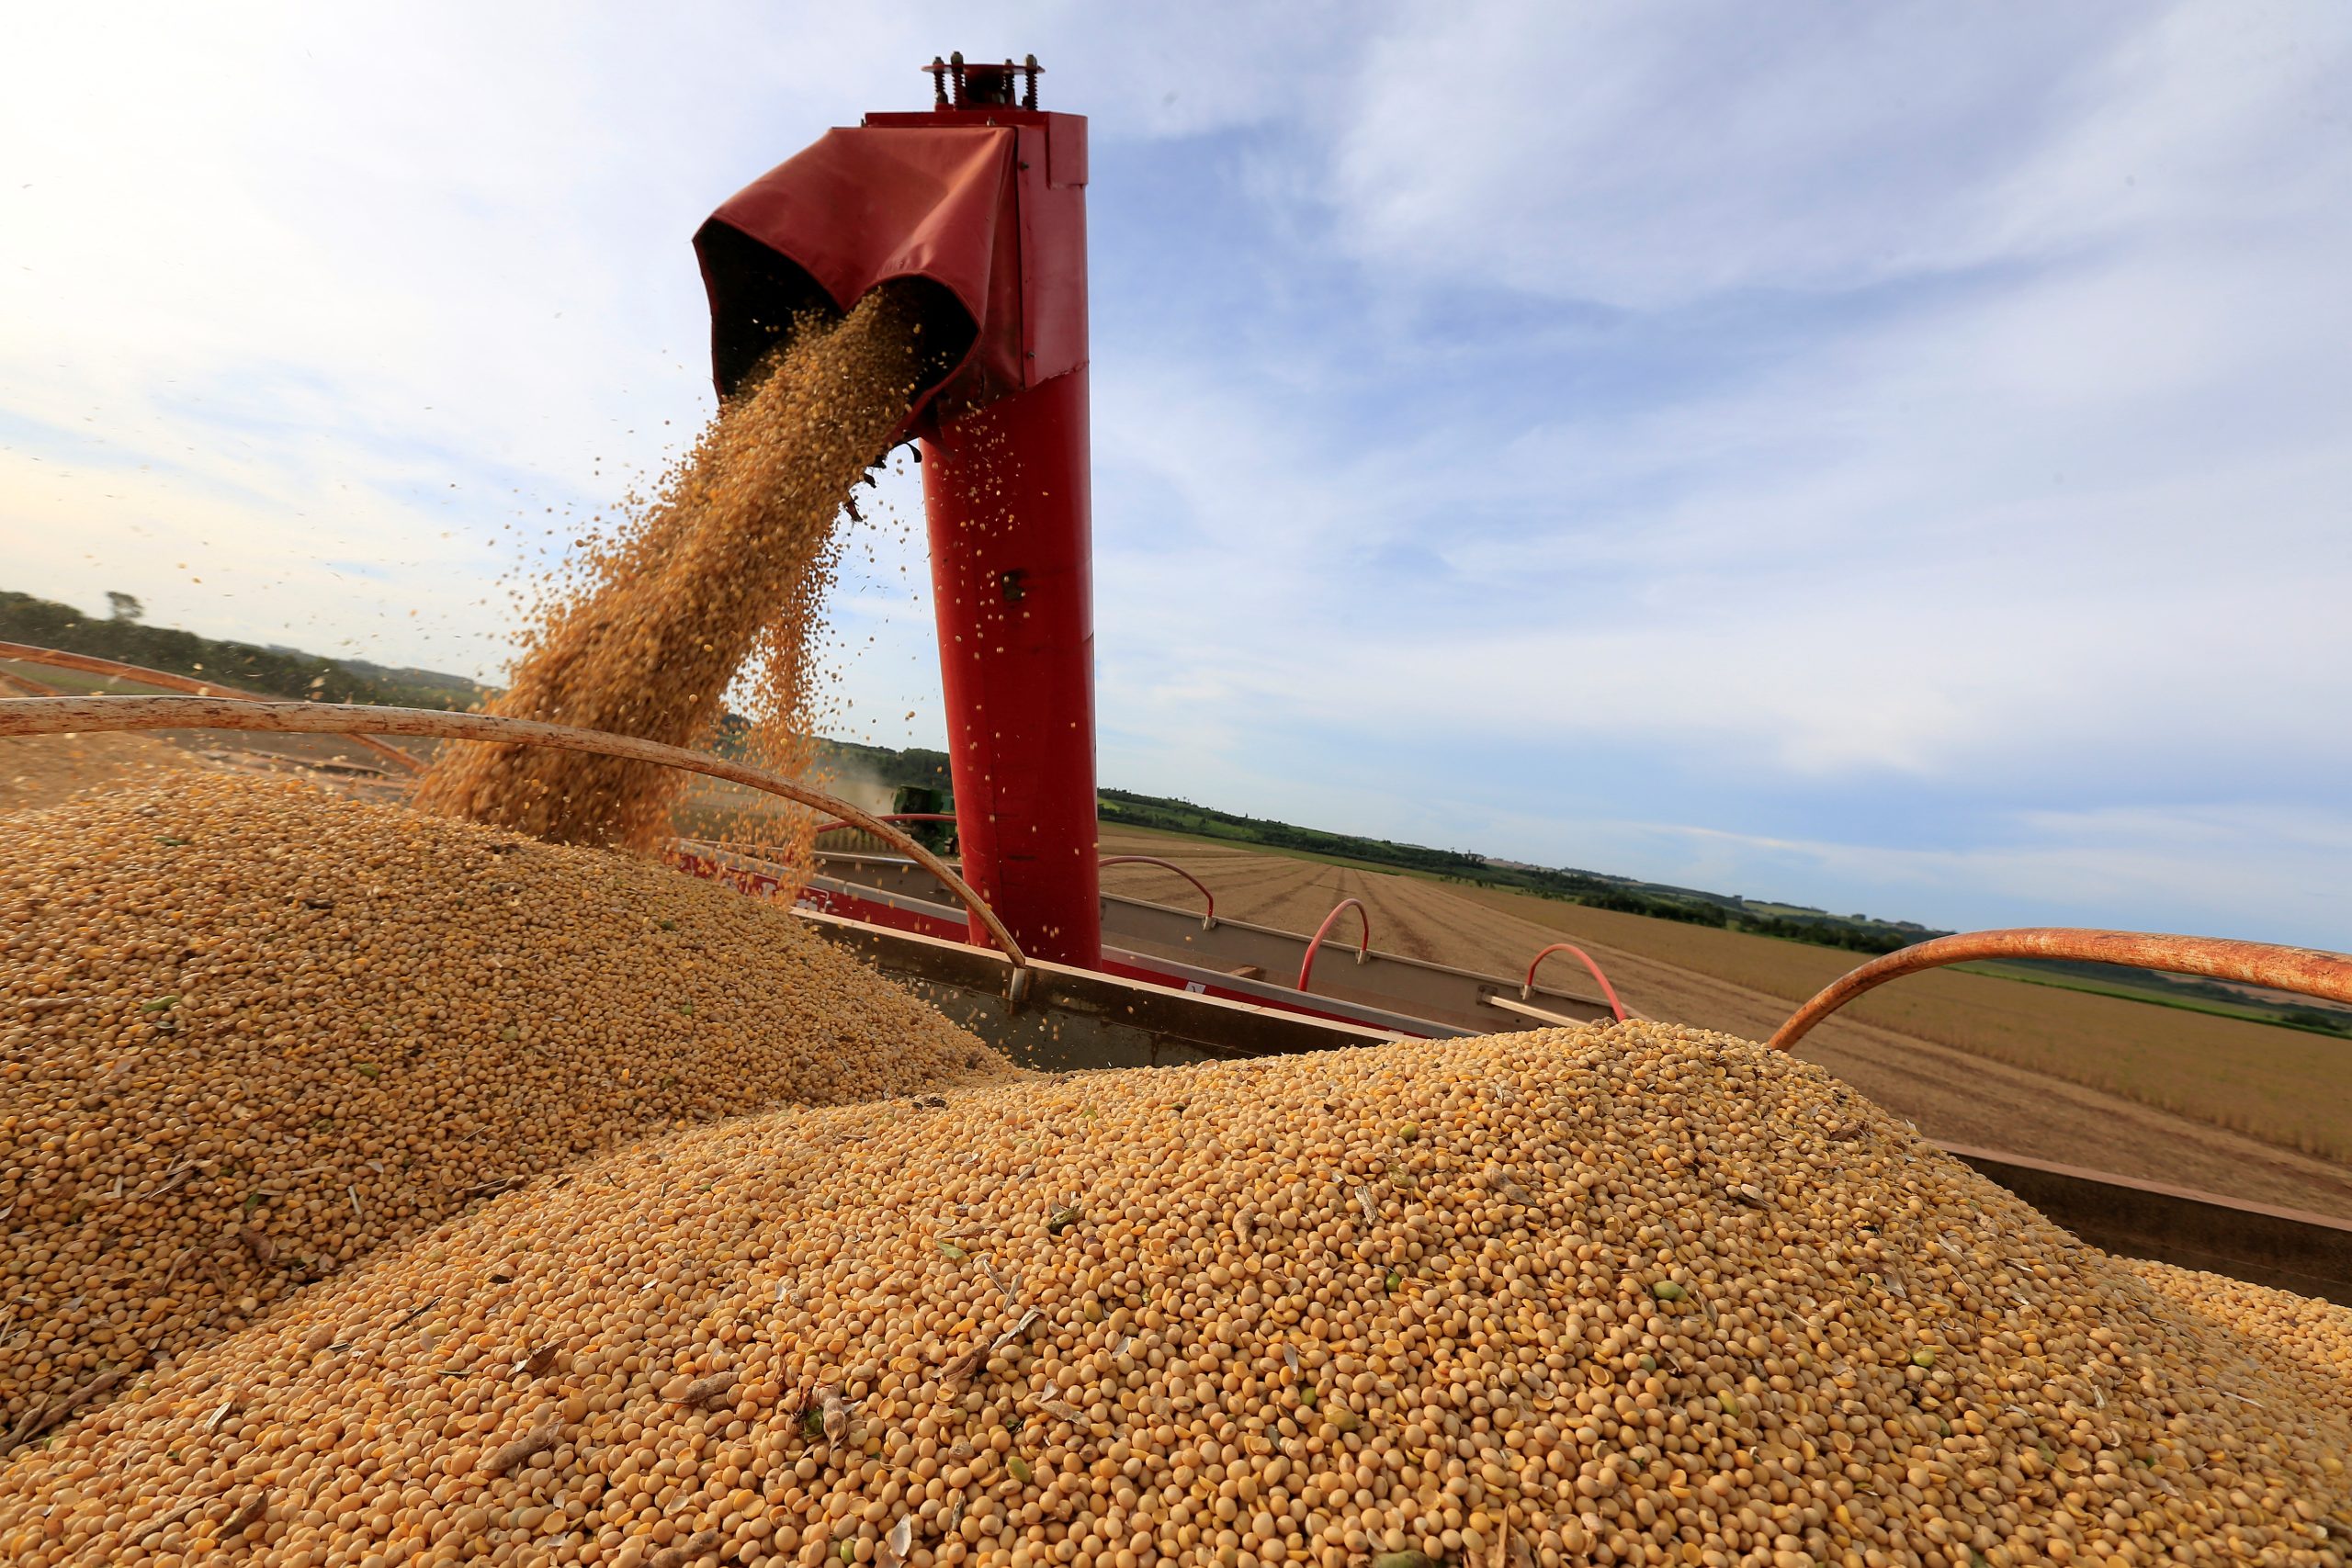  Produção de soja no Brasil teve queda após início da colheita 